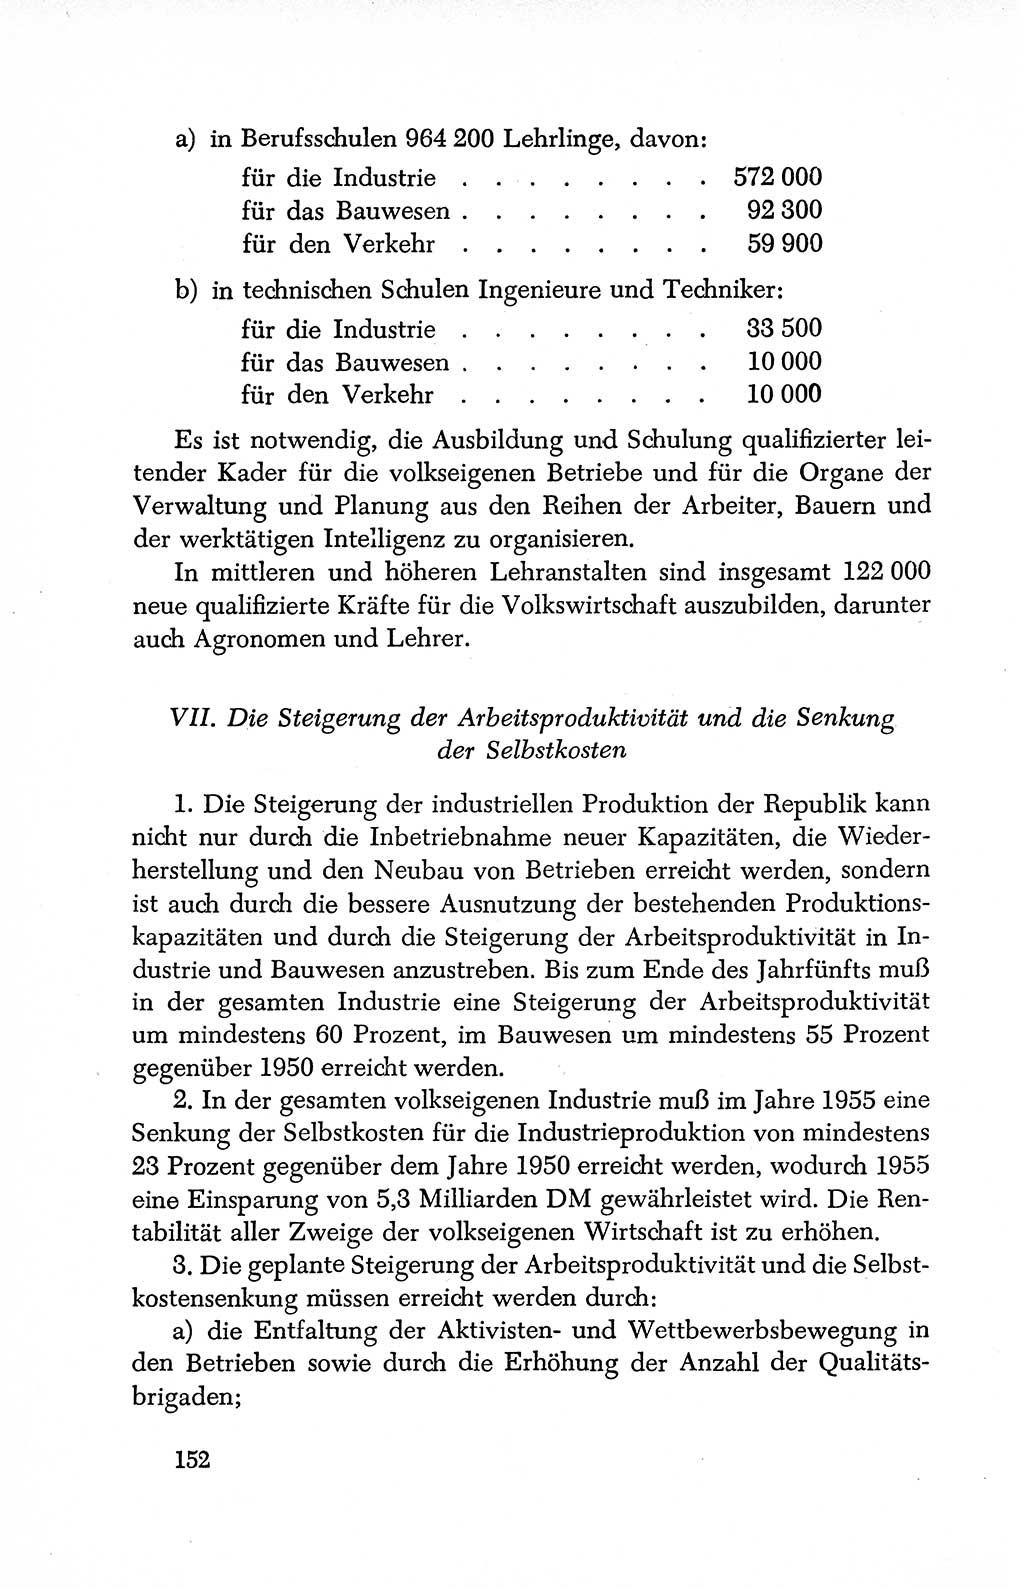 Dokumente der Sozialistischen Einheitspartei Deutschlands (SED) [Deutsche Demokratische Republik (DDR)] 1950-1952, Seite 152 (Dok. SED DDR 1950-1952, S. 152)